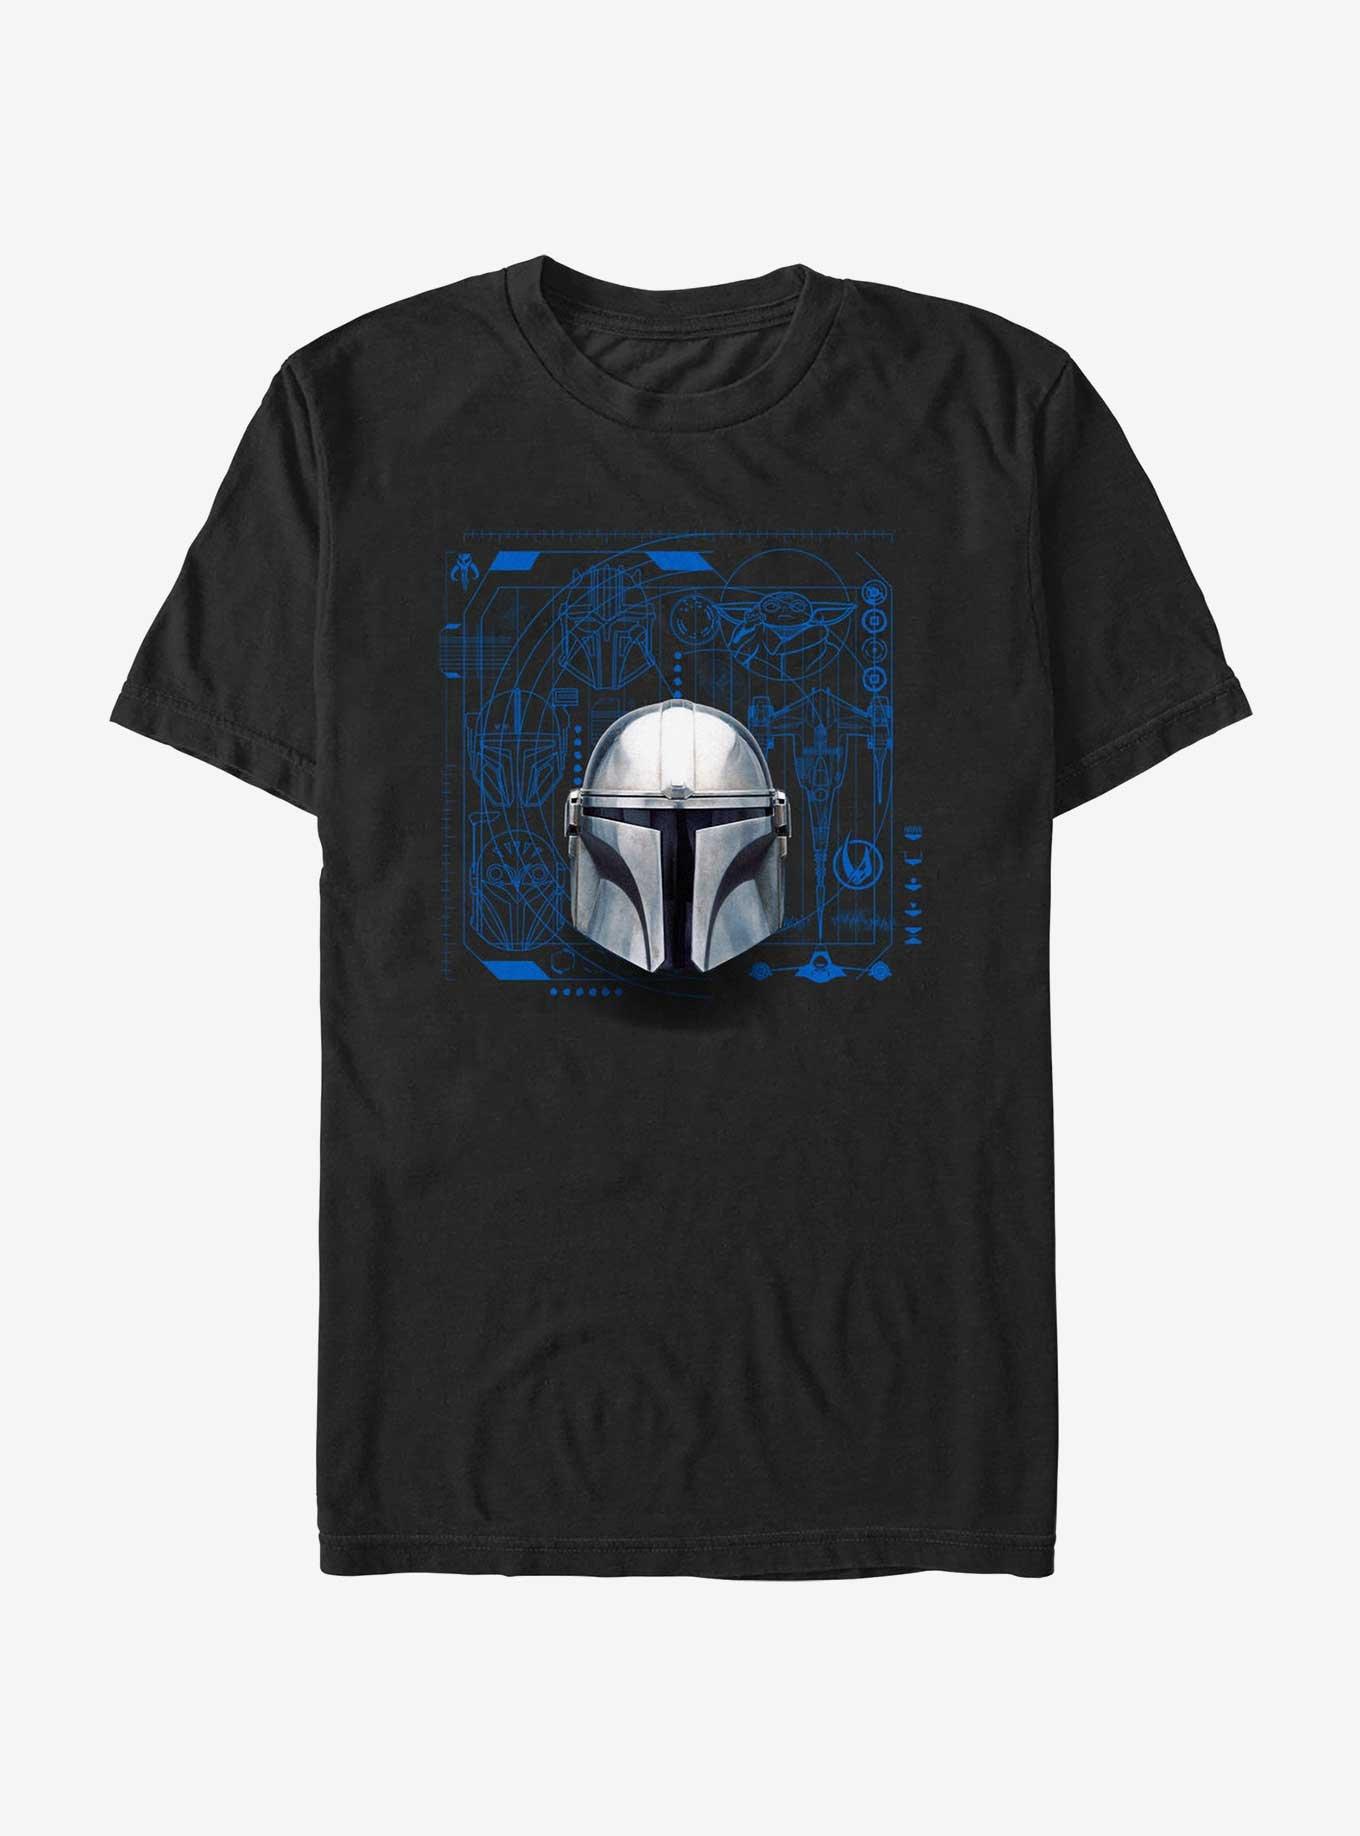 Star Wars The Mandalorian Helmet Schematic T-Shirt, BLACK, hi-res